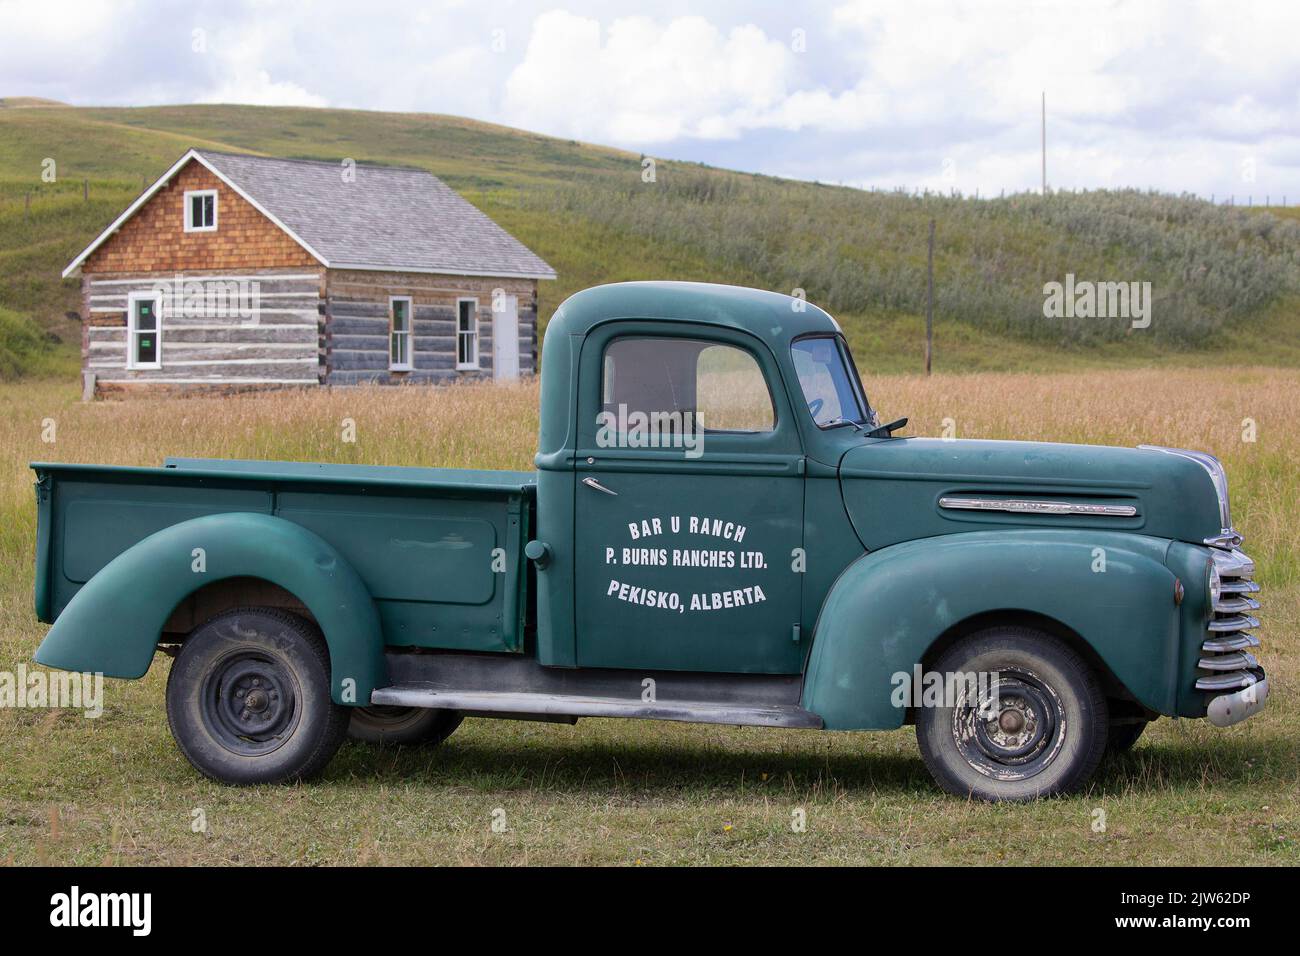 Mercurio Media tonelada 1940s camión agrícola verde de edad con logotipo en el Sitio Histórico Nacional Bar U Ranch en el sur de Alberta, Canadá Foto de stock